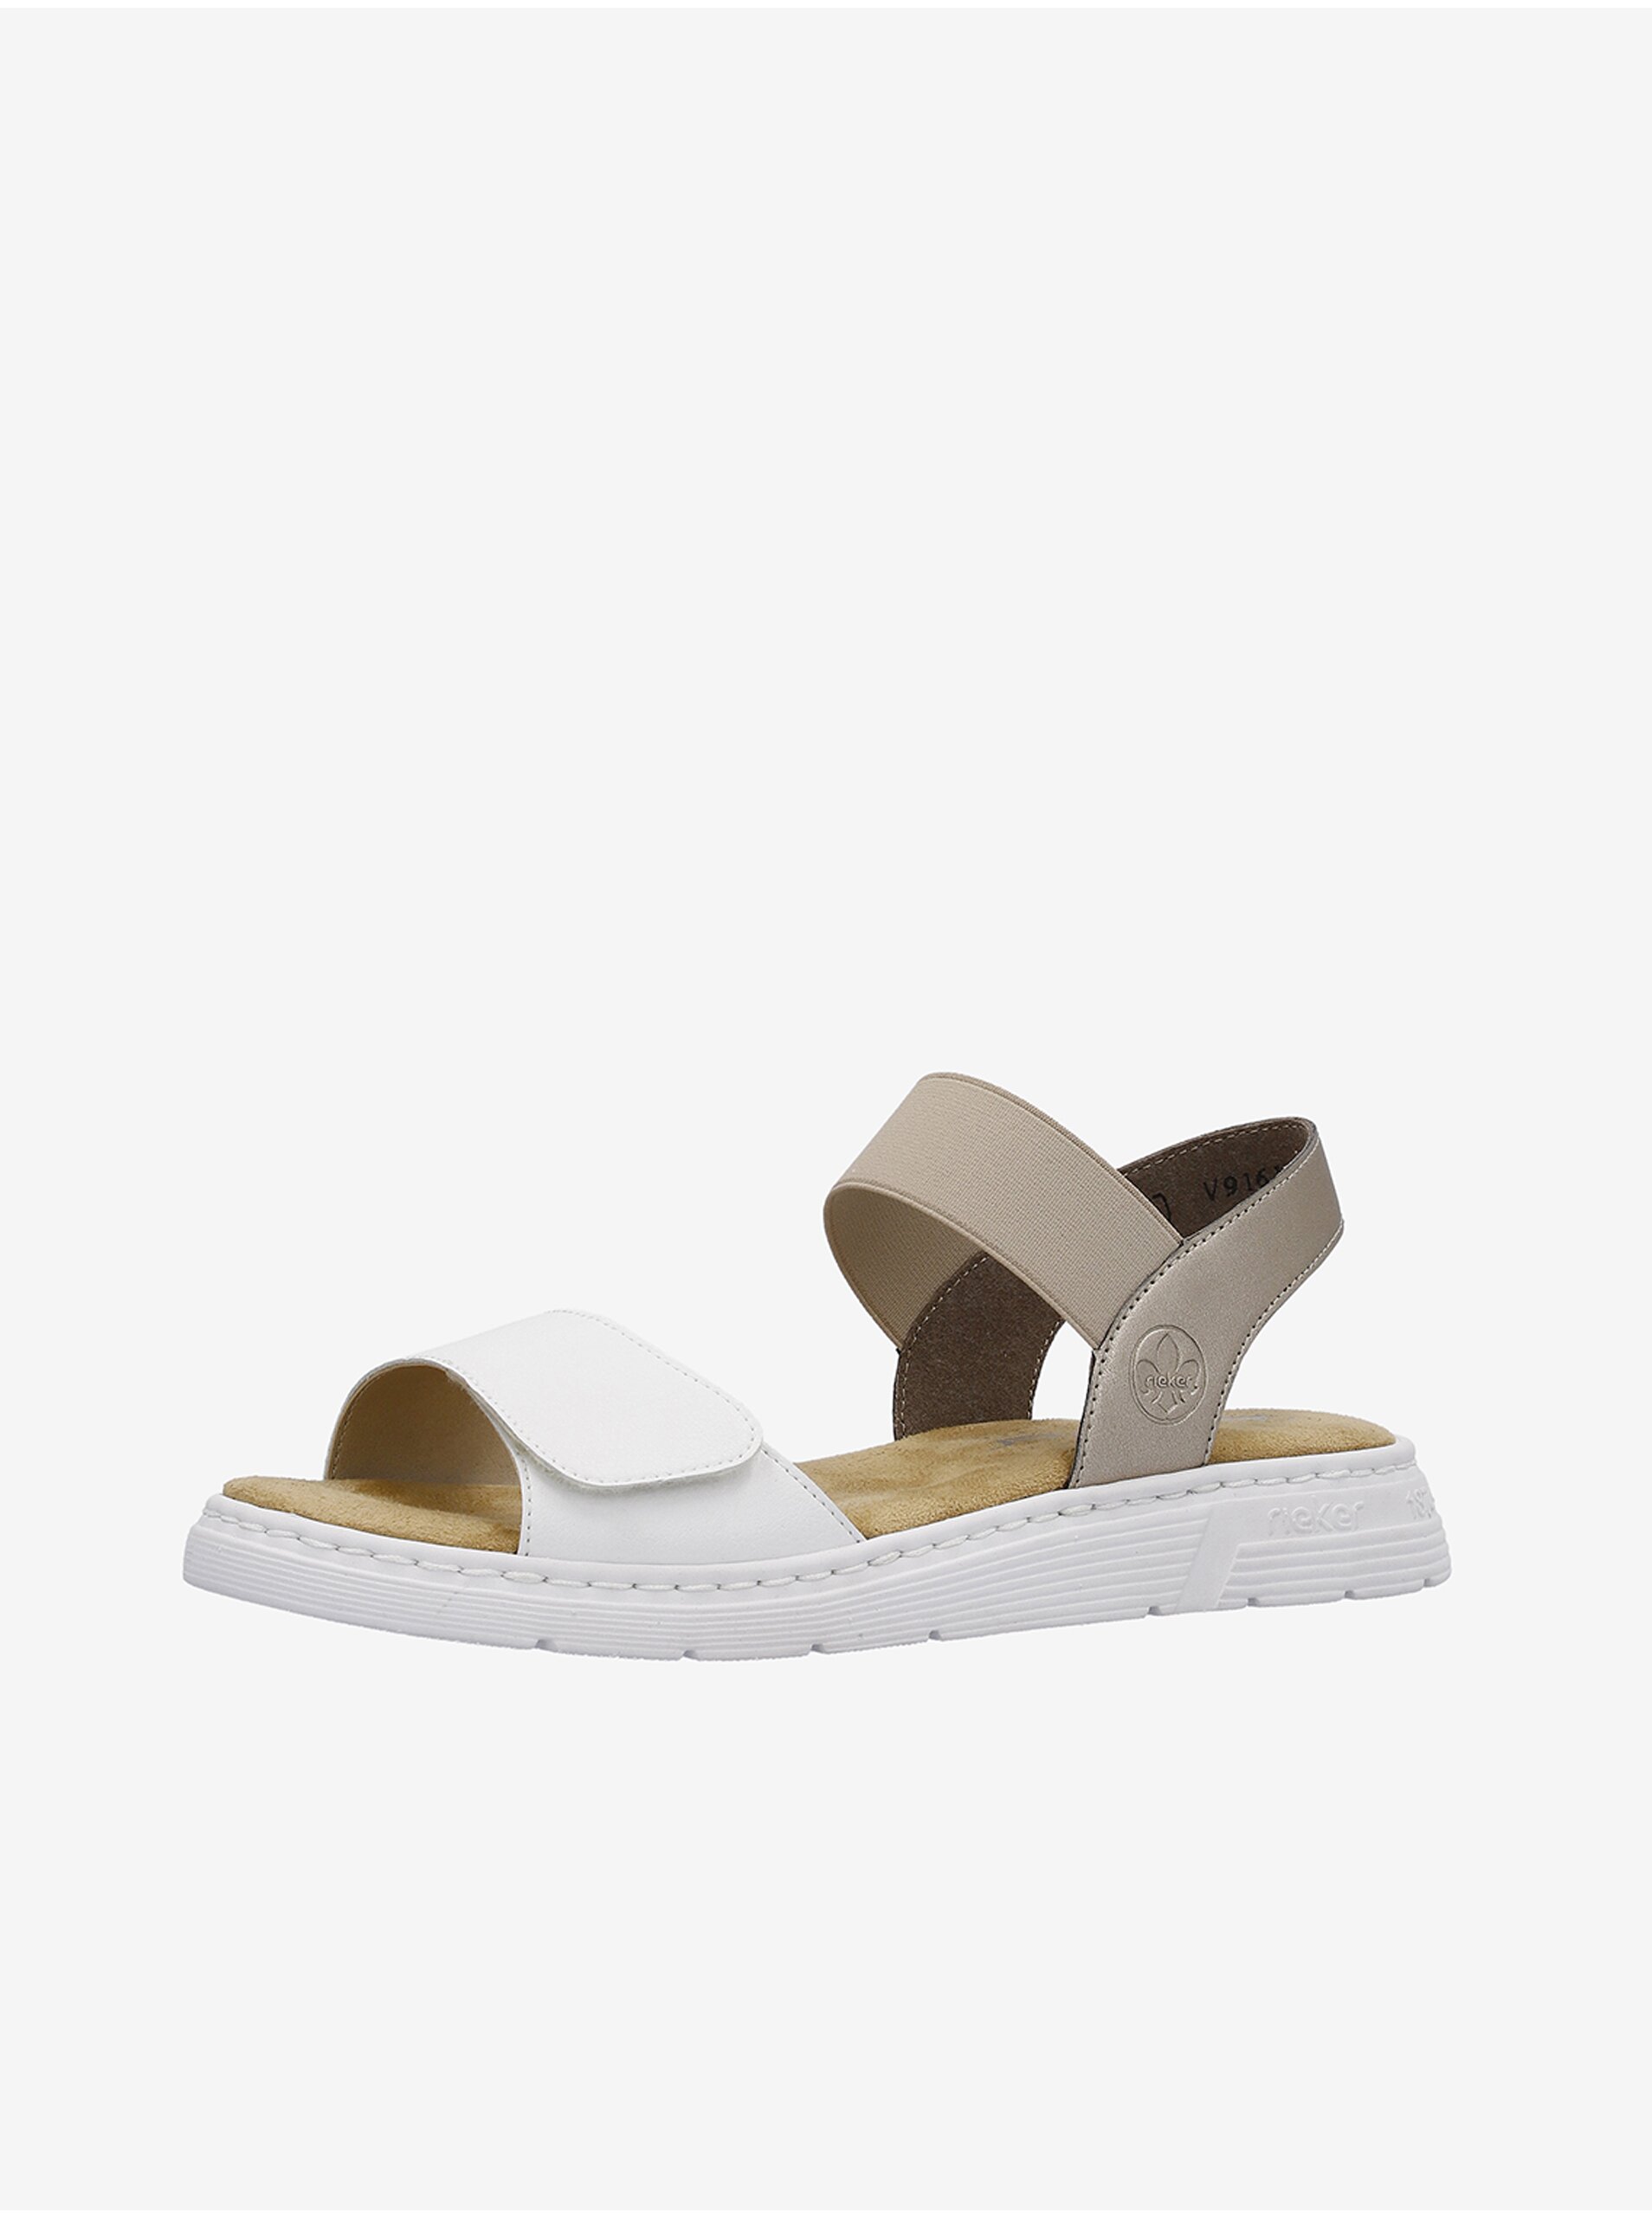 Lacno Béžovo-biele dámske kožené sandálky Rieker